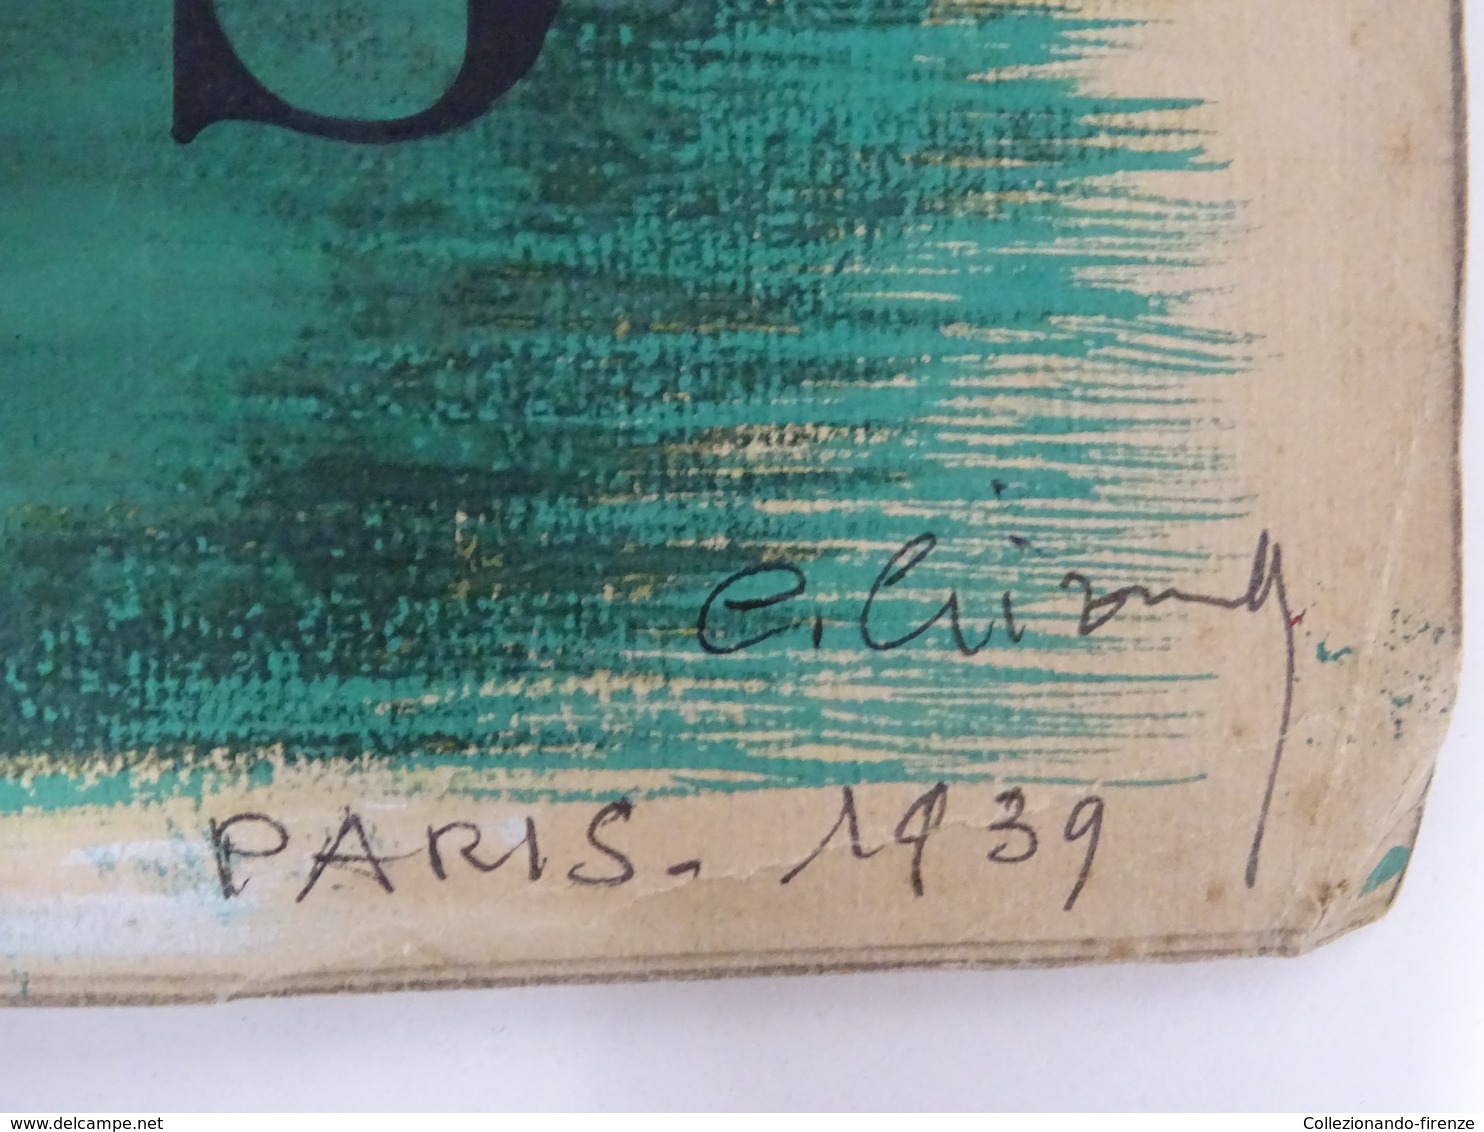 !SCONTI! Bozzetto originale Grand Prix Longchamps acquerello su cartoncino firmato e datato Parigi 1939